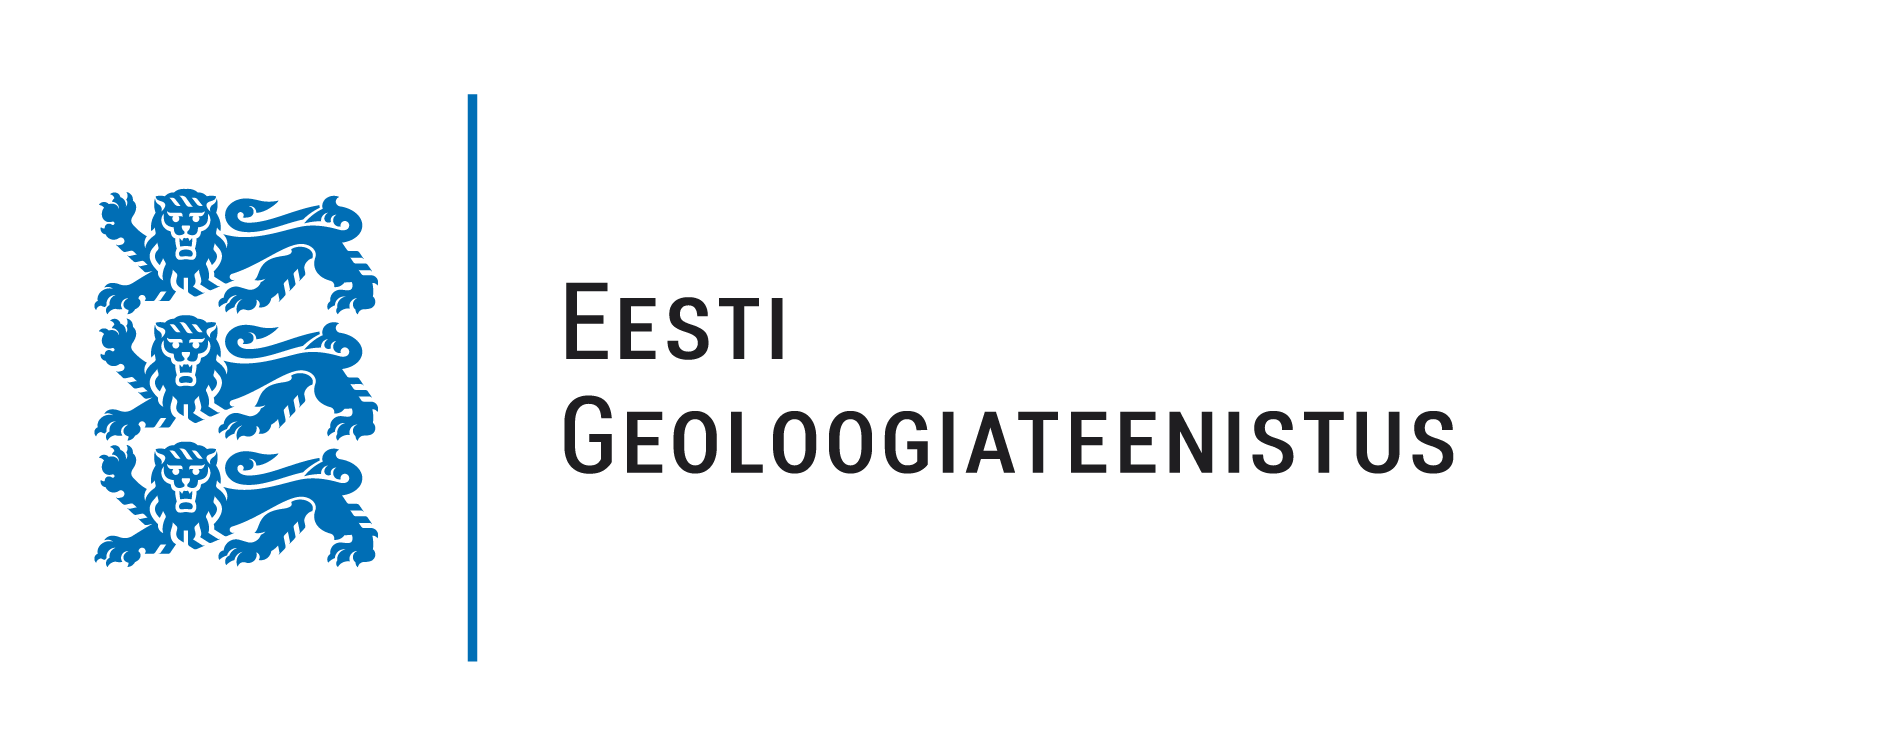 Eesti Geoloogiateenistus logo